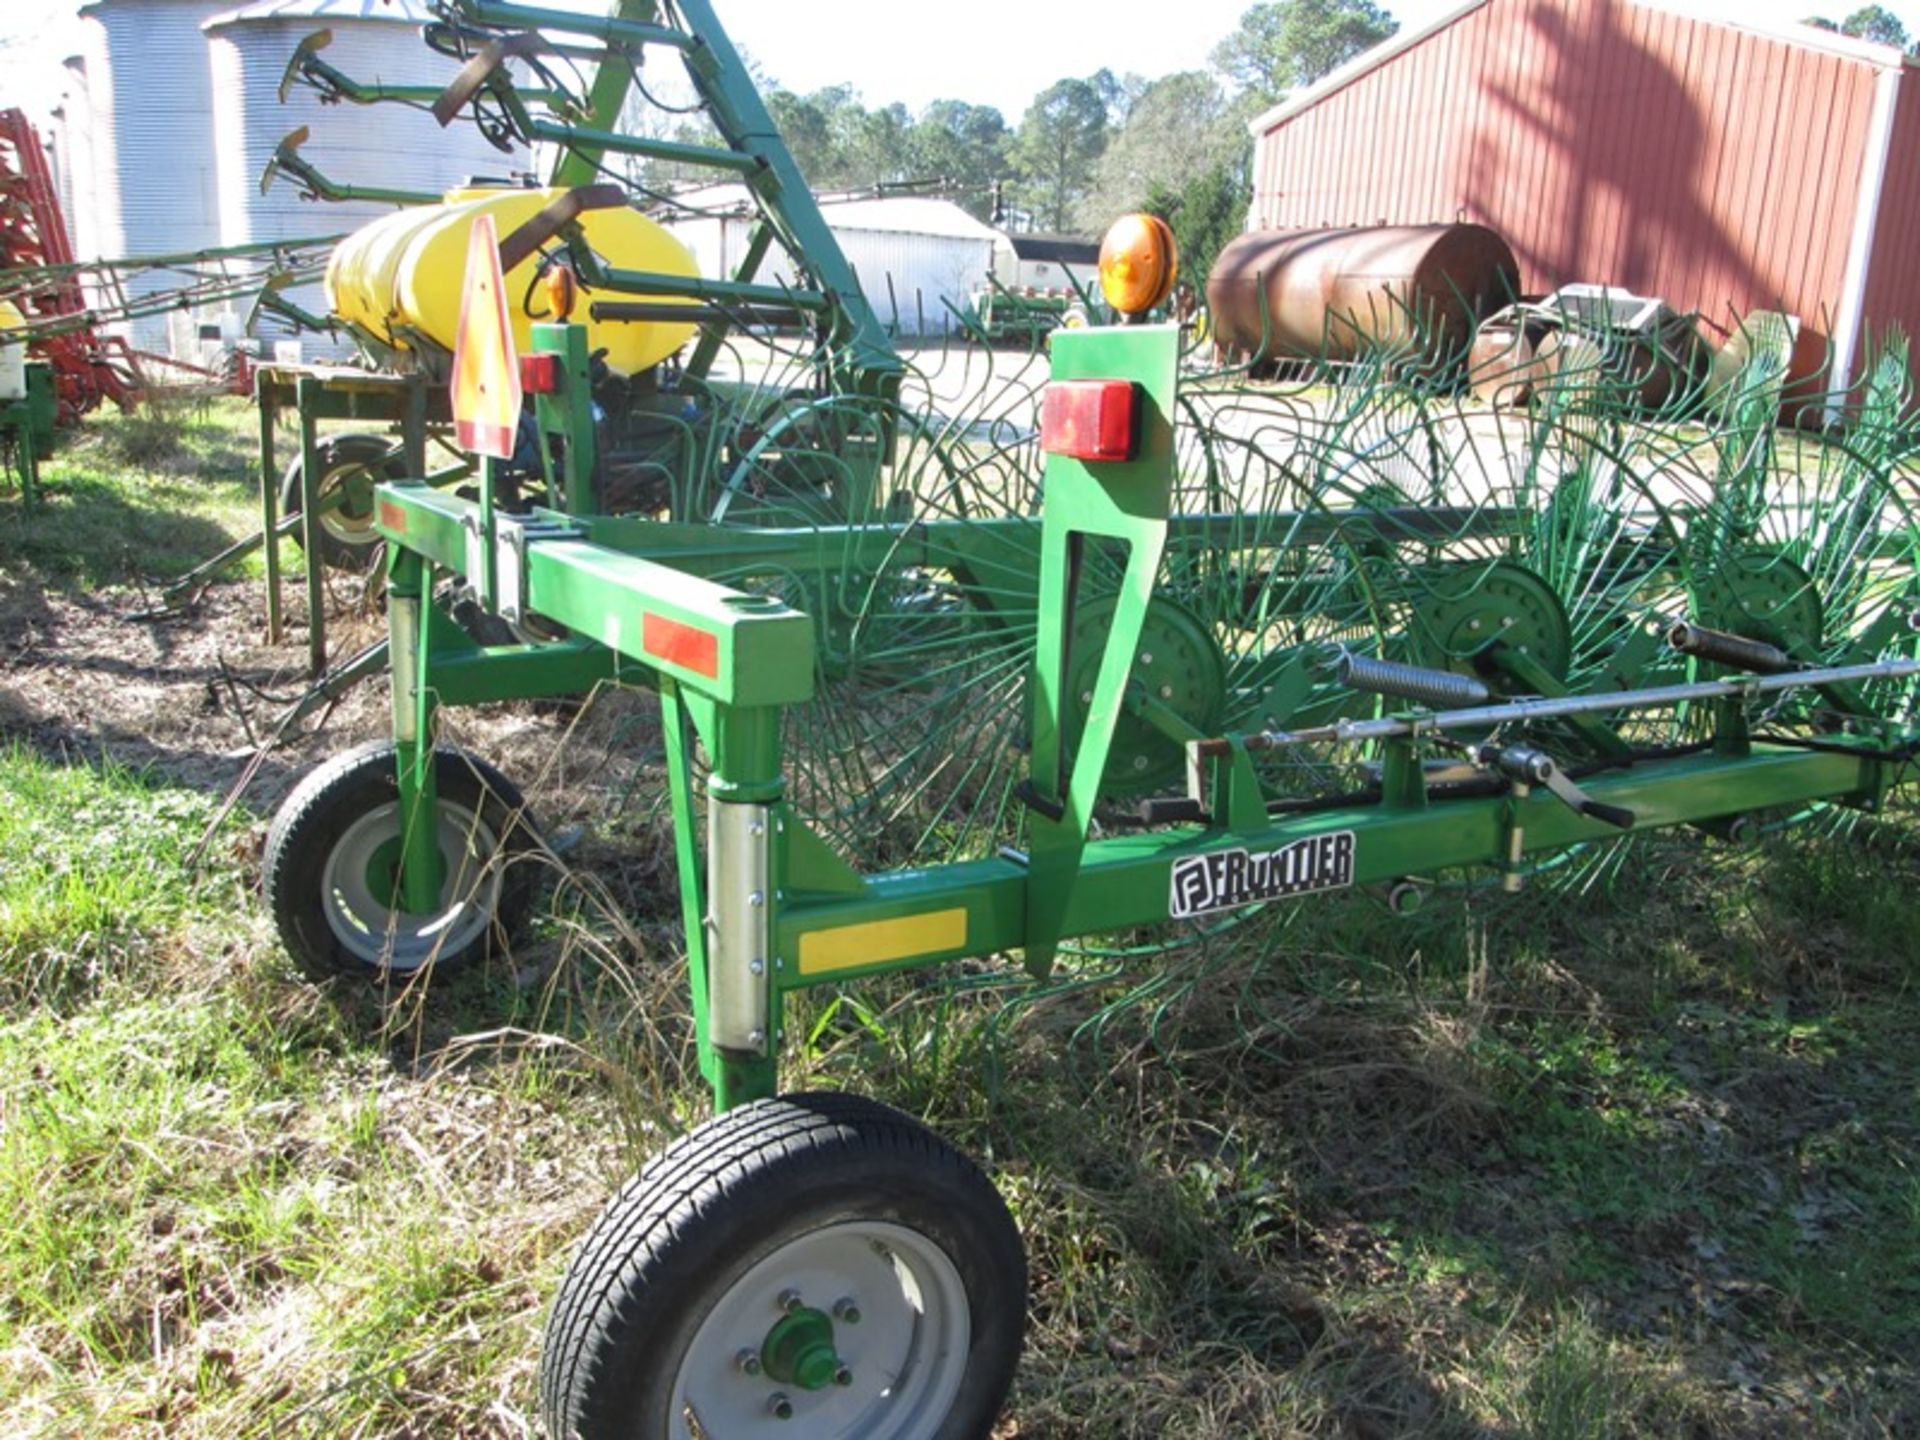 Frontier WR2114 14 wheel hay rake / thatcher Vin# 001129 - Image 3 of 3